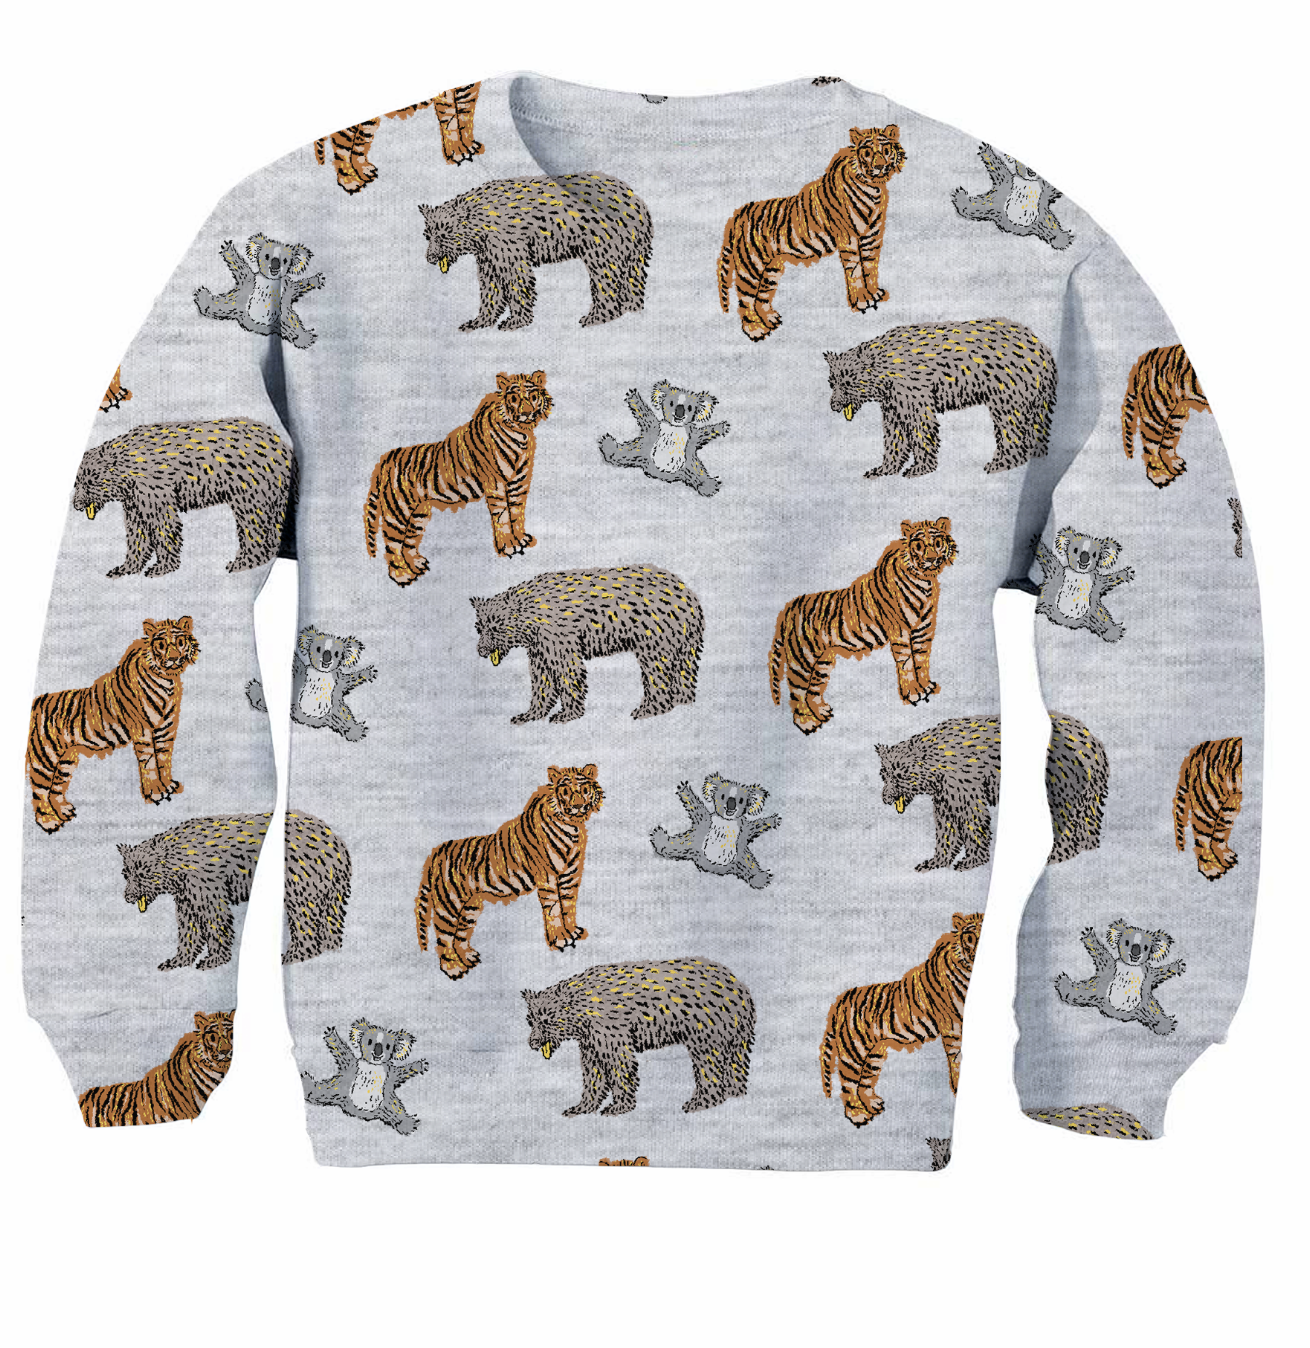 RAWR! pattern on kid's sweatshirt